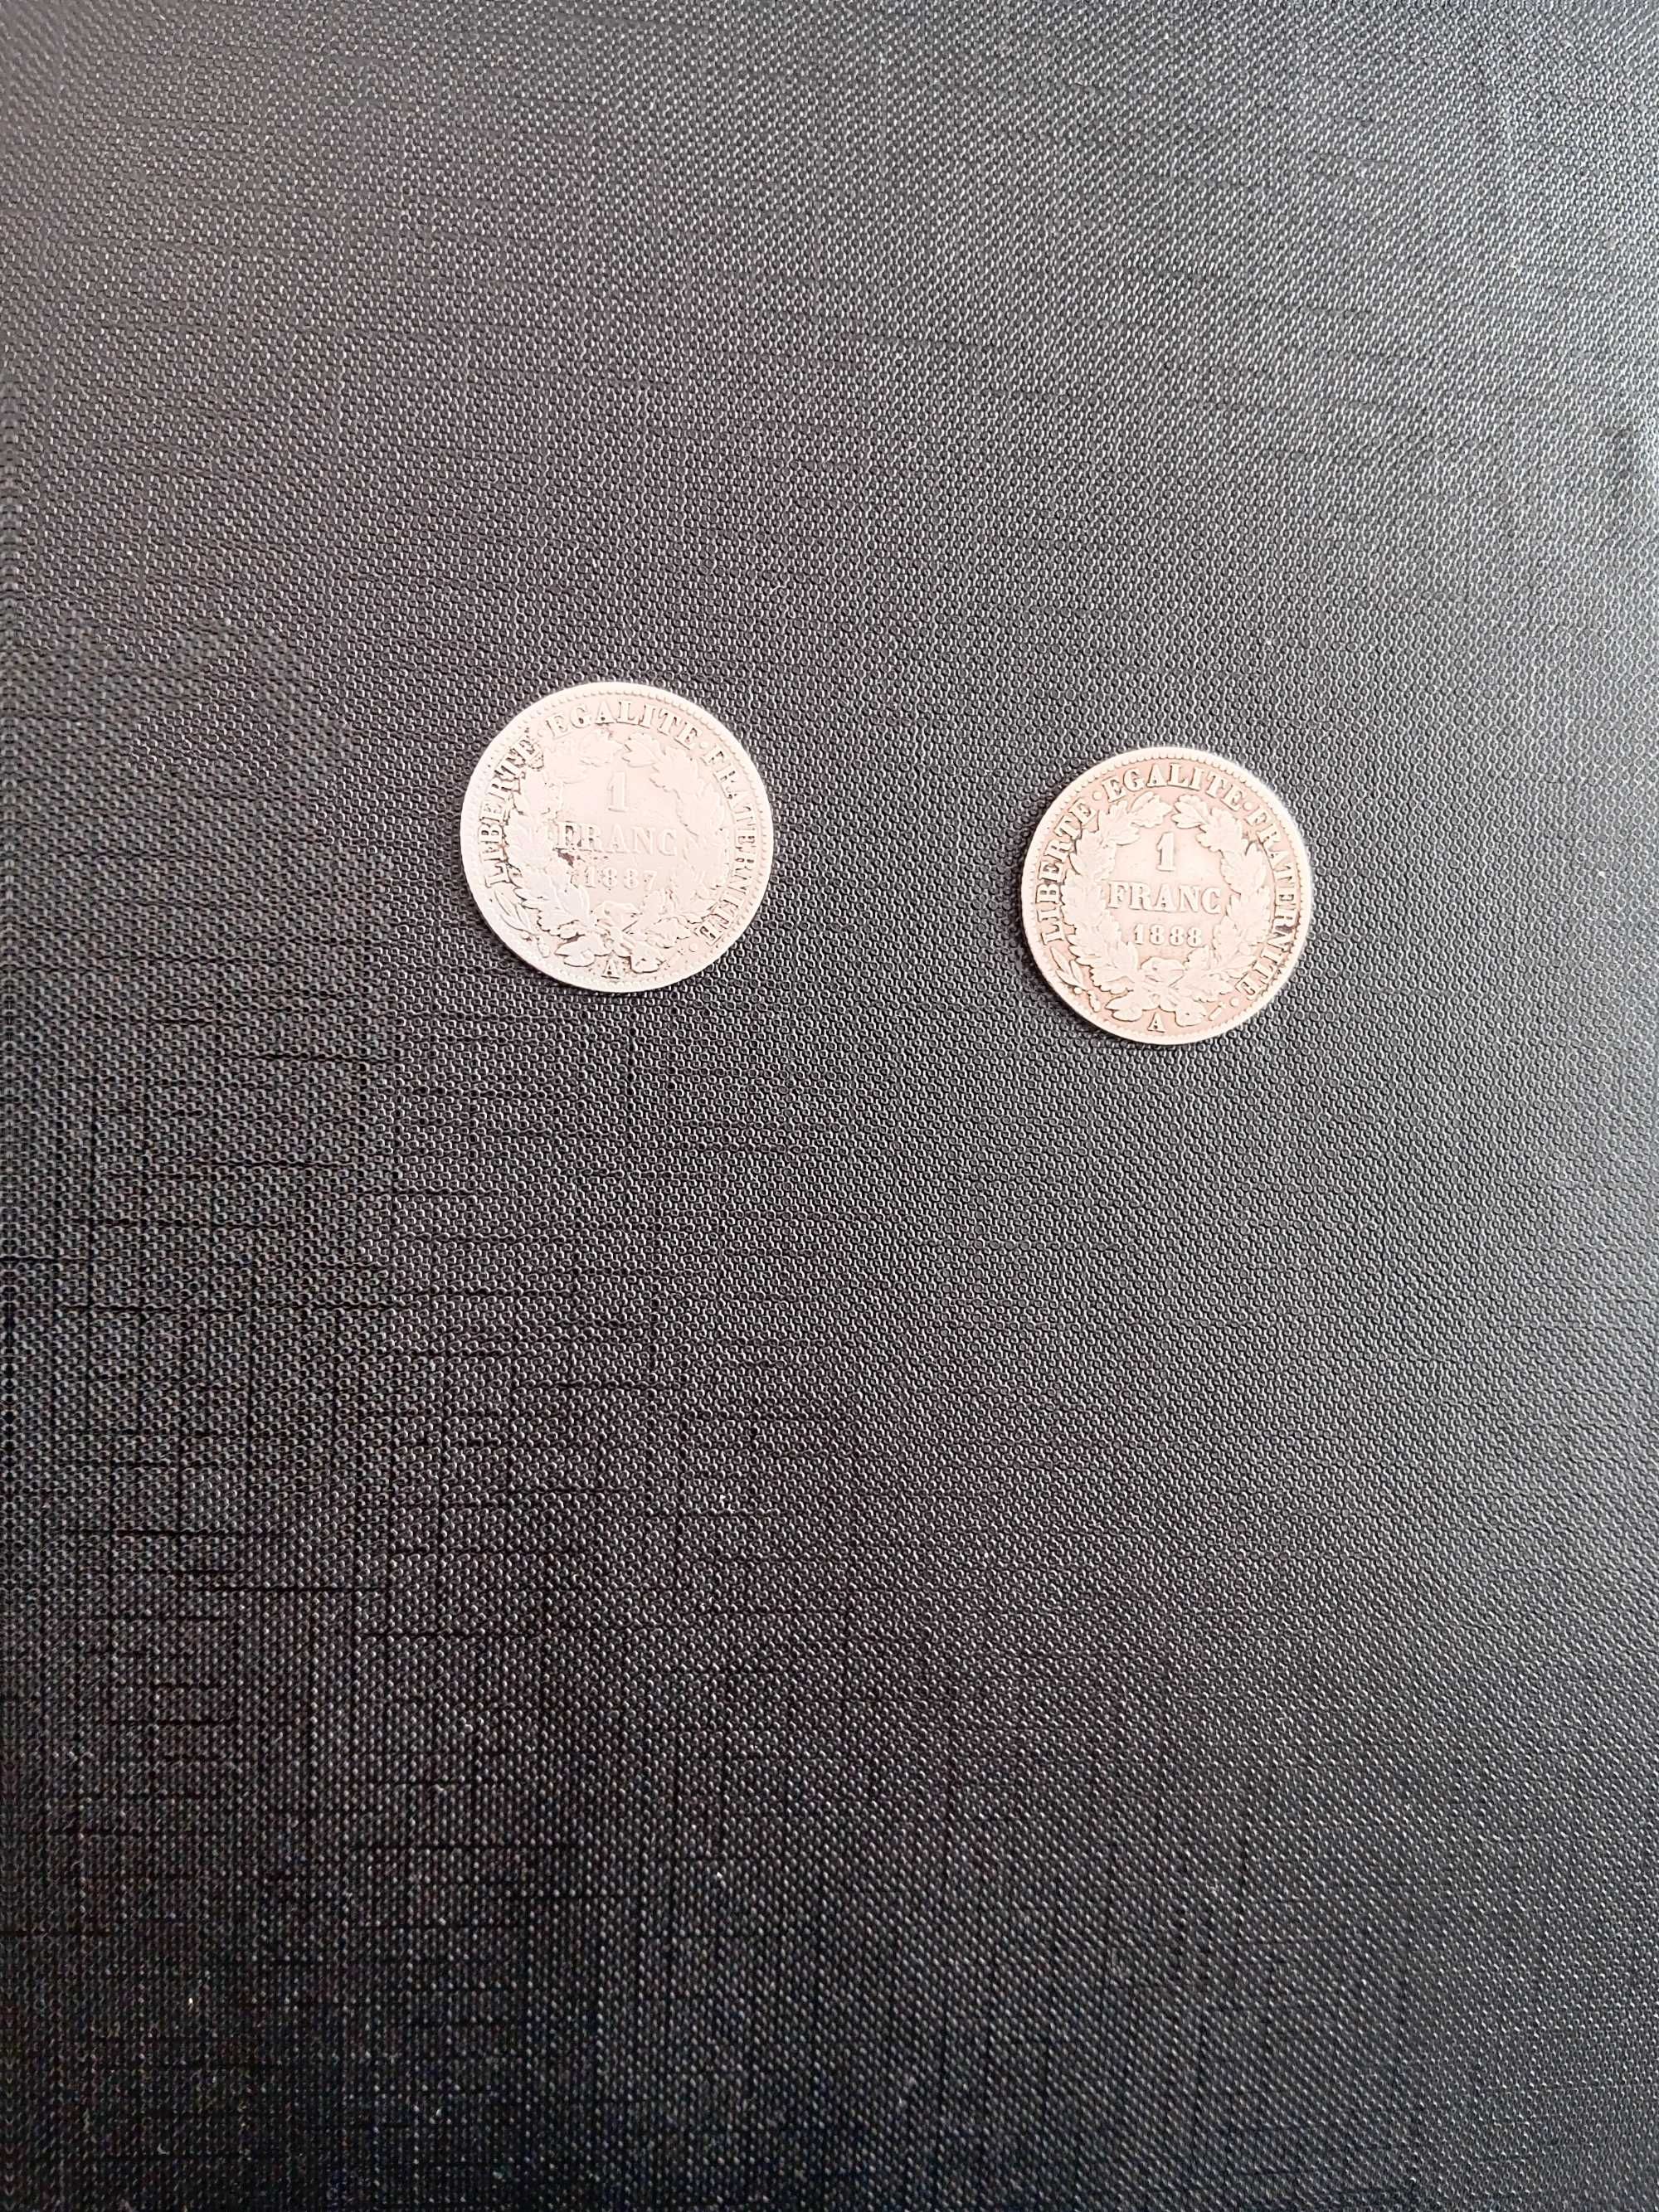 Сребърни френски монети от 1 франк